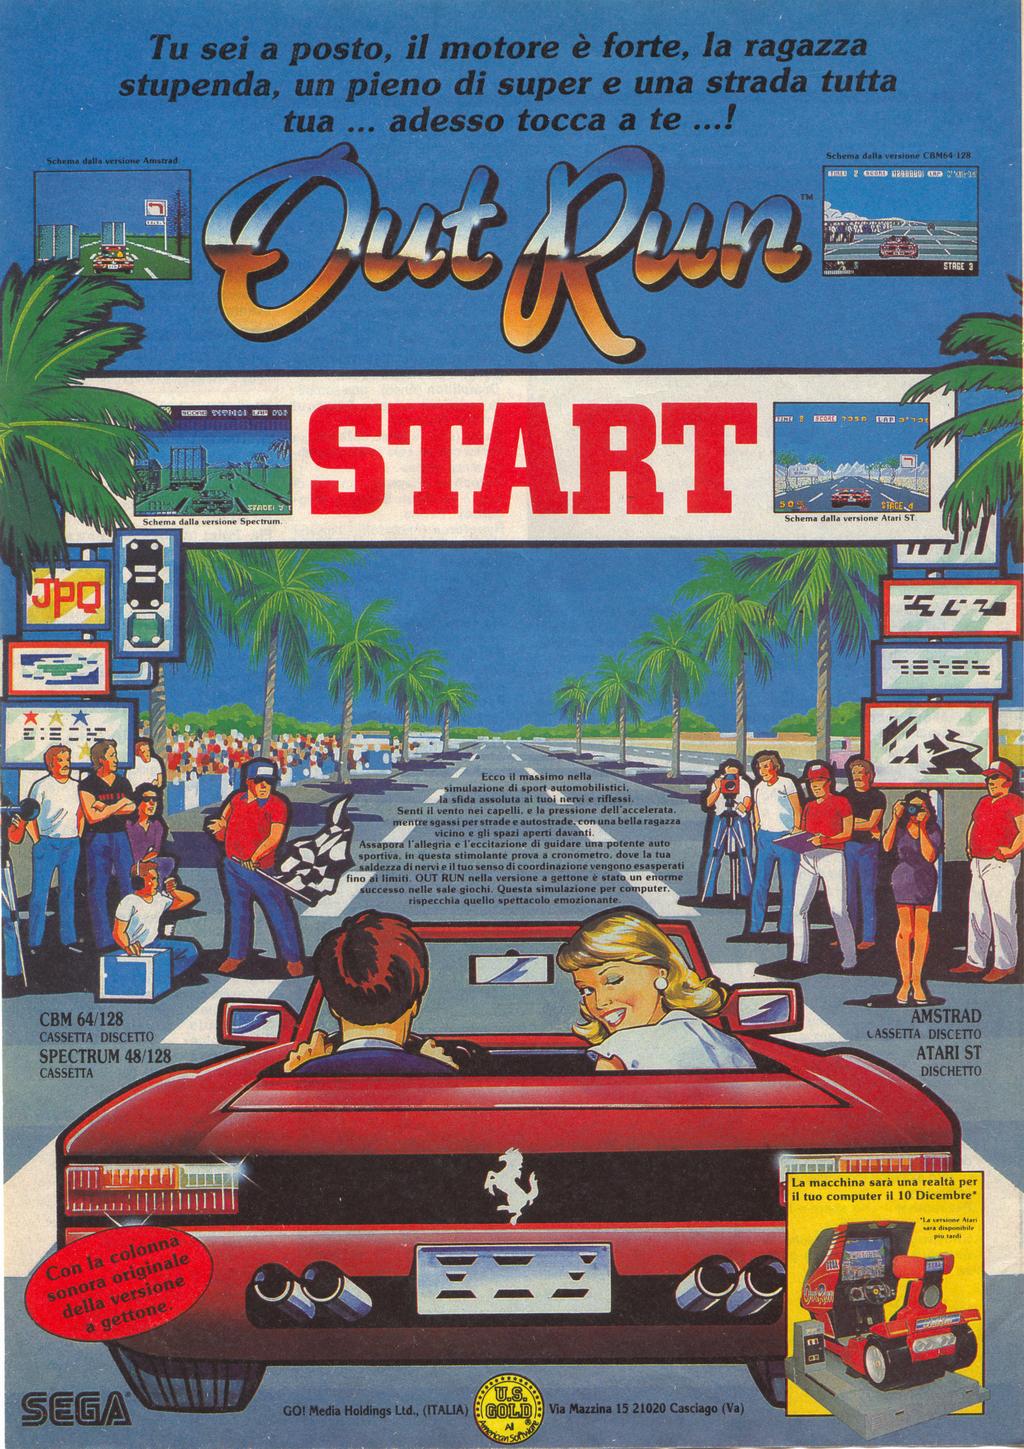 outrun arcade juego poster 1986